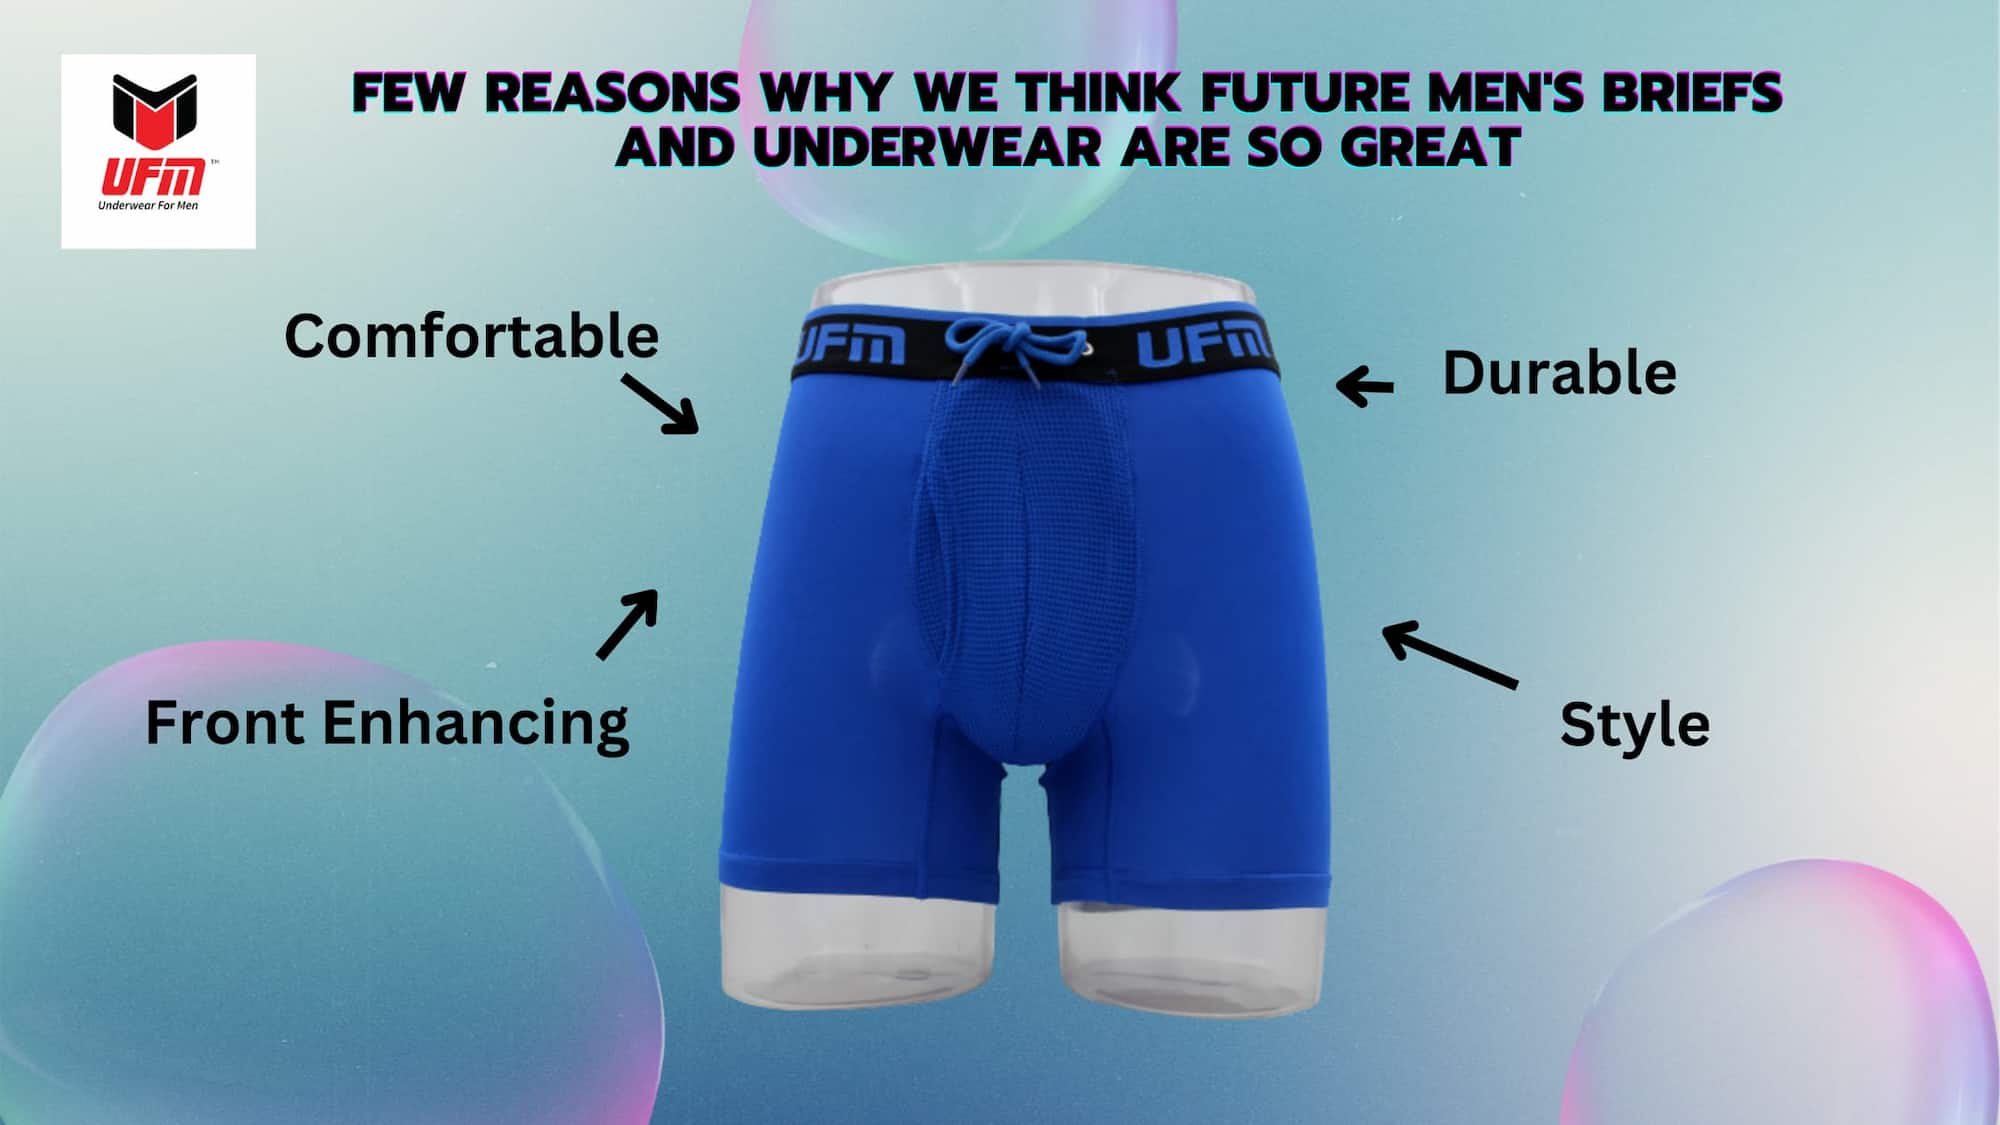 Future Men's Pouch Briefs and Underwear